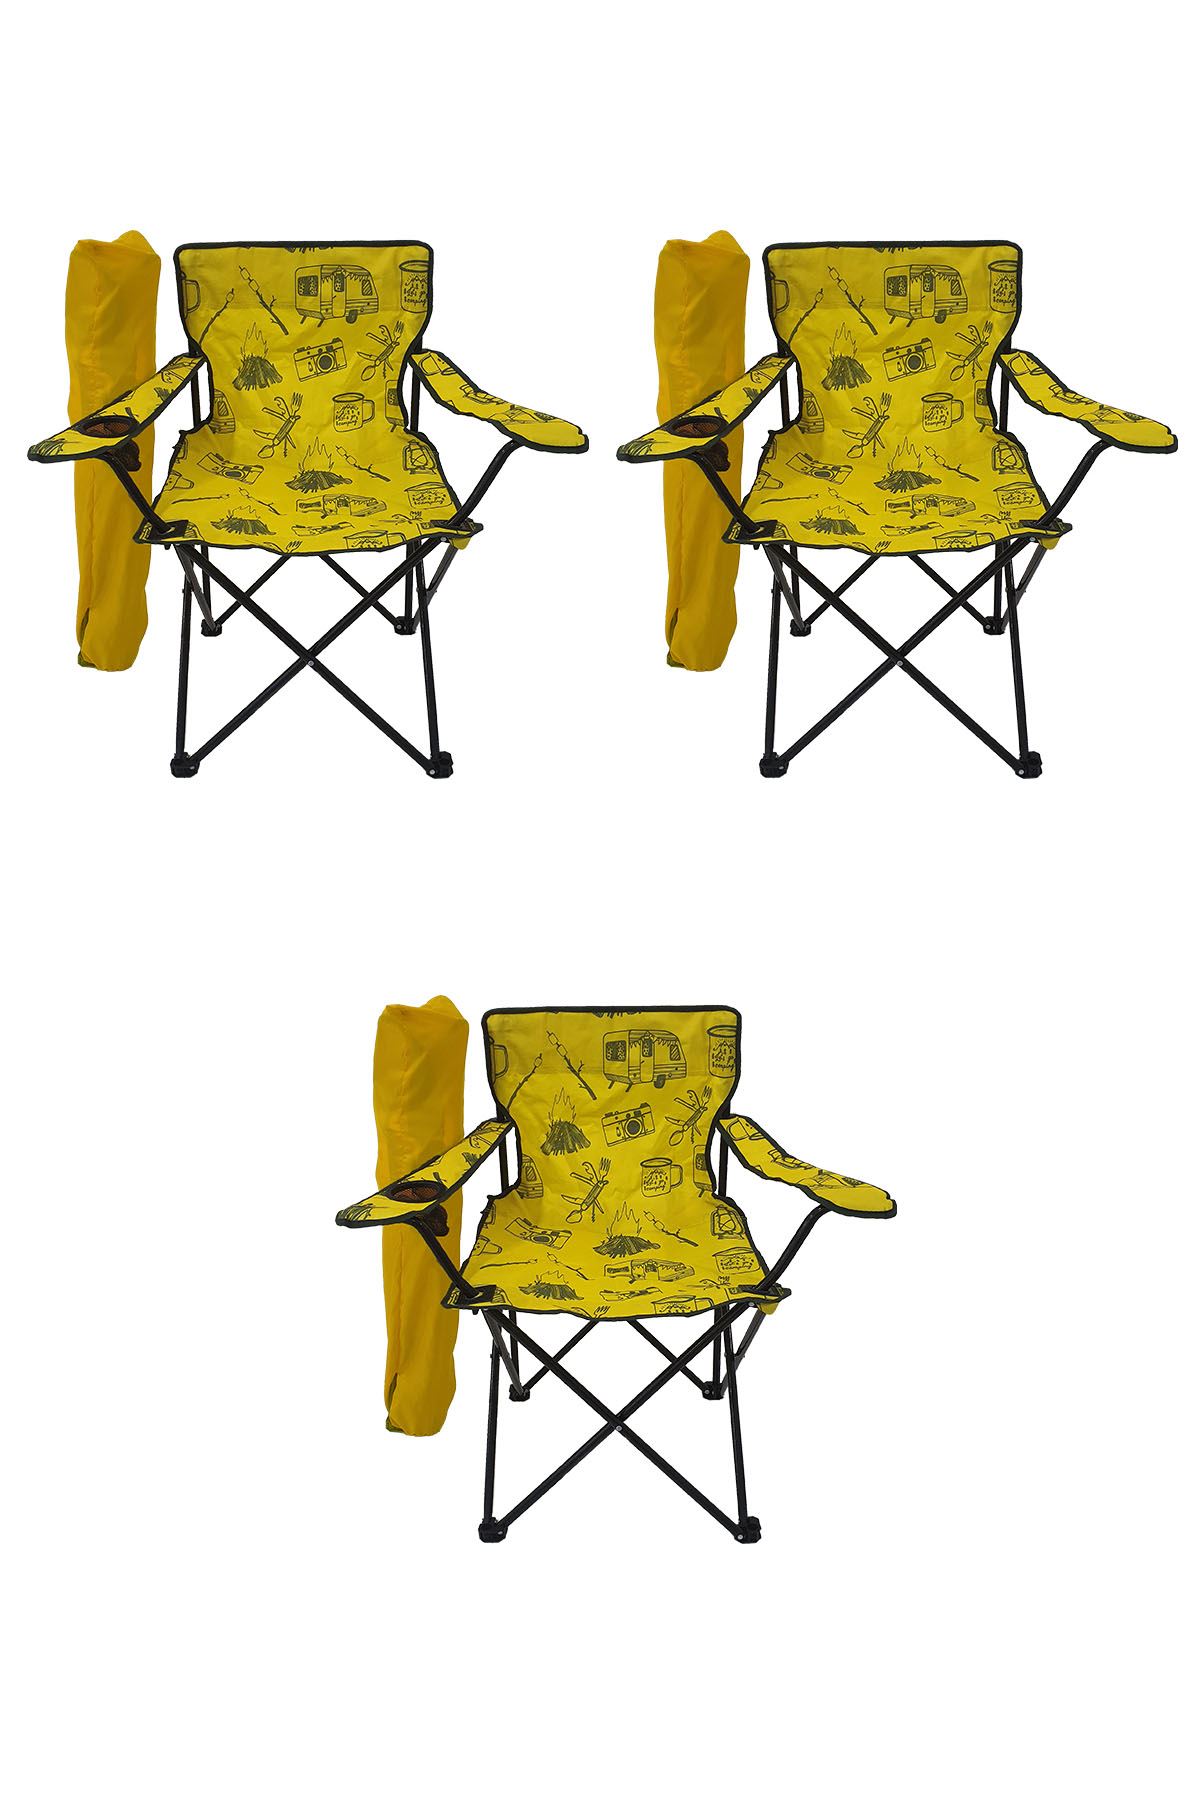 Bofigo 3 Adet Kamp Sandalyesi Katlanır Sandalye Bahçe Koltuğu Piknik Plaj Sandalyesi Desenli Sarı